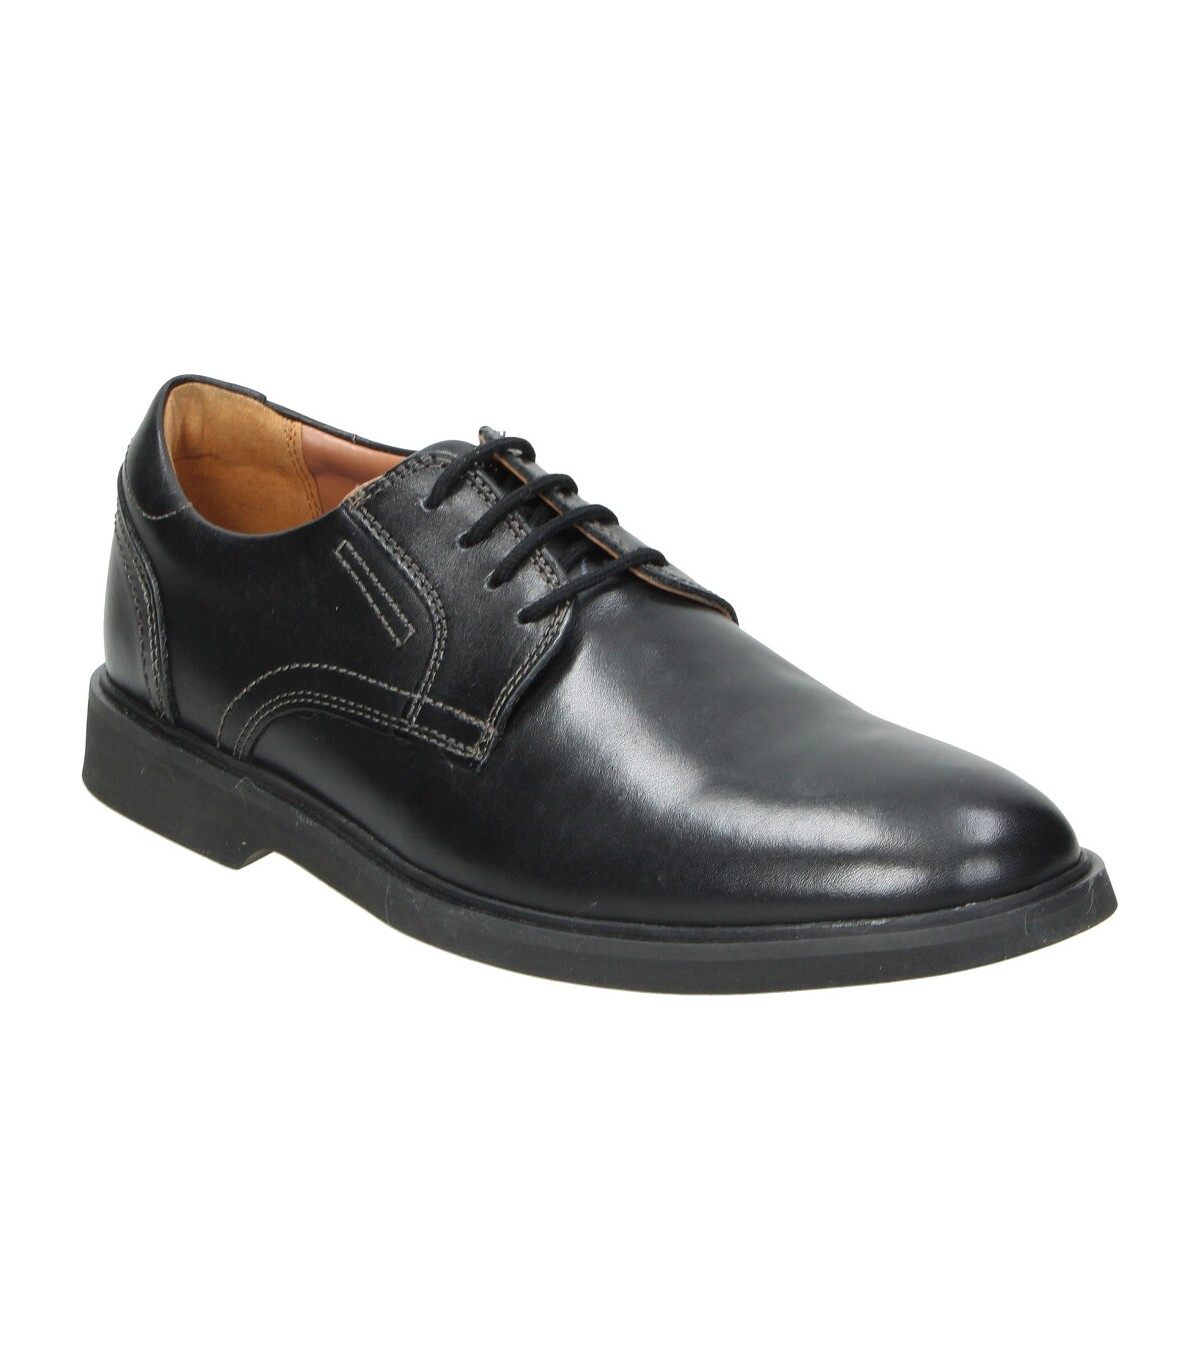 Zapatos negros para hombre Clarks Malwood Oxford en MEGACALZADO